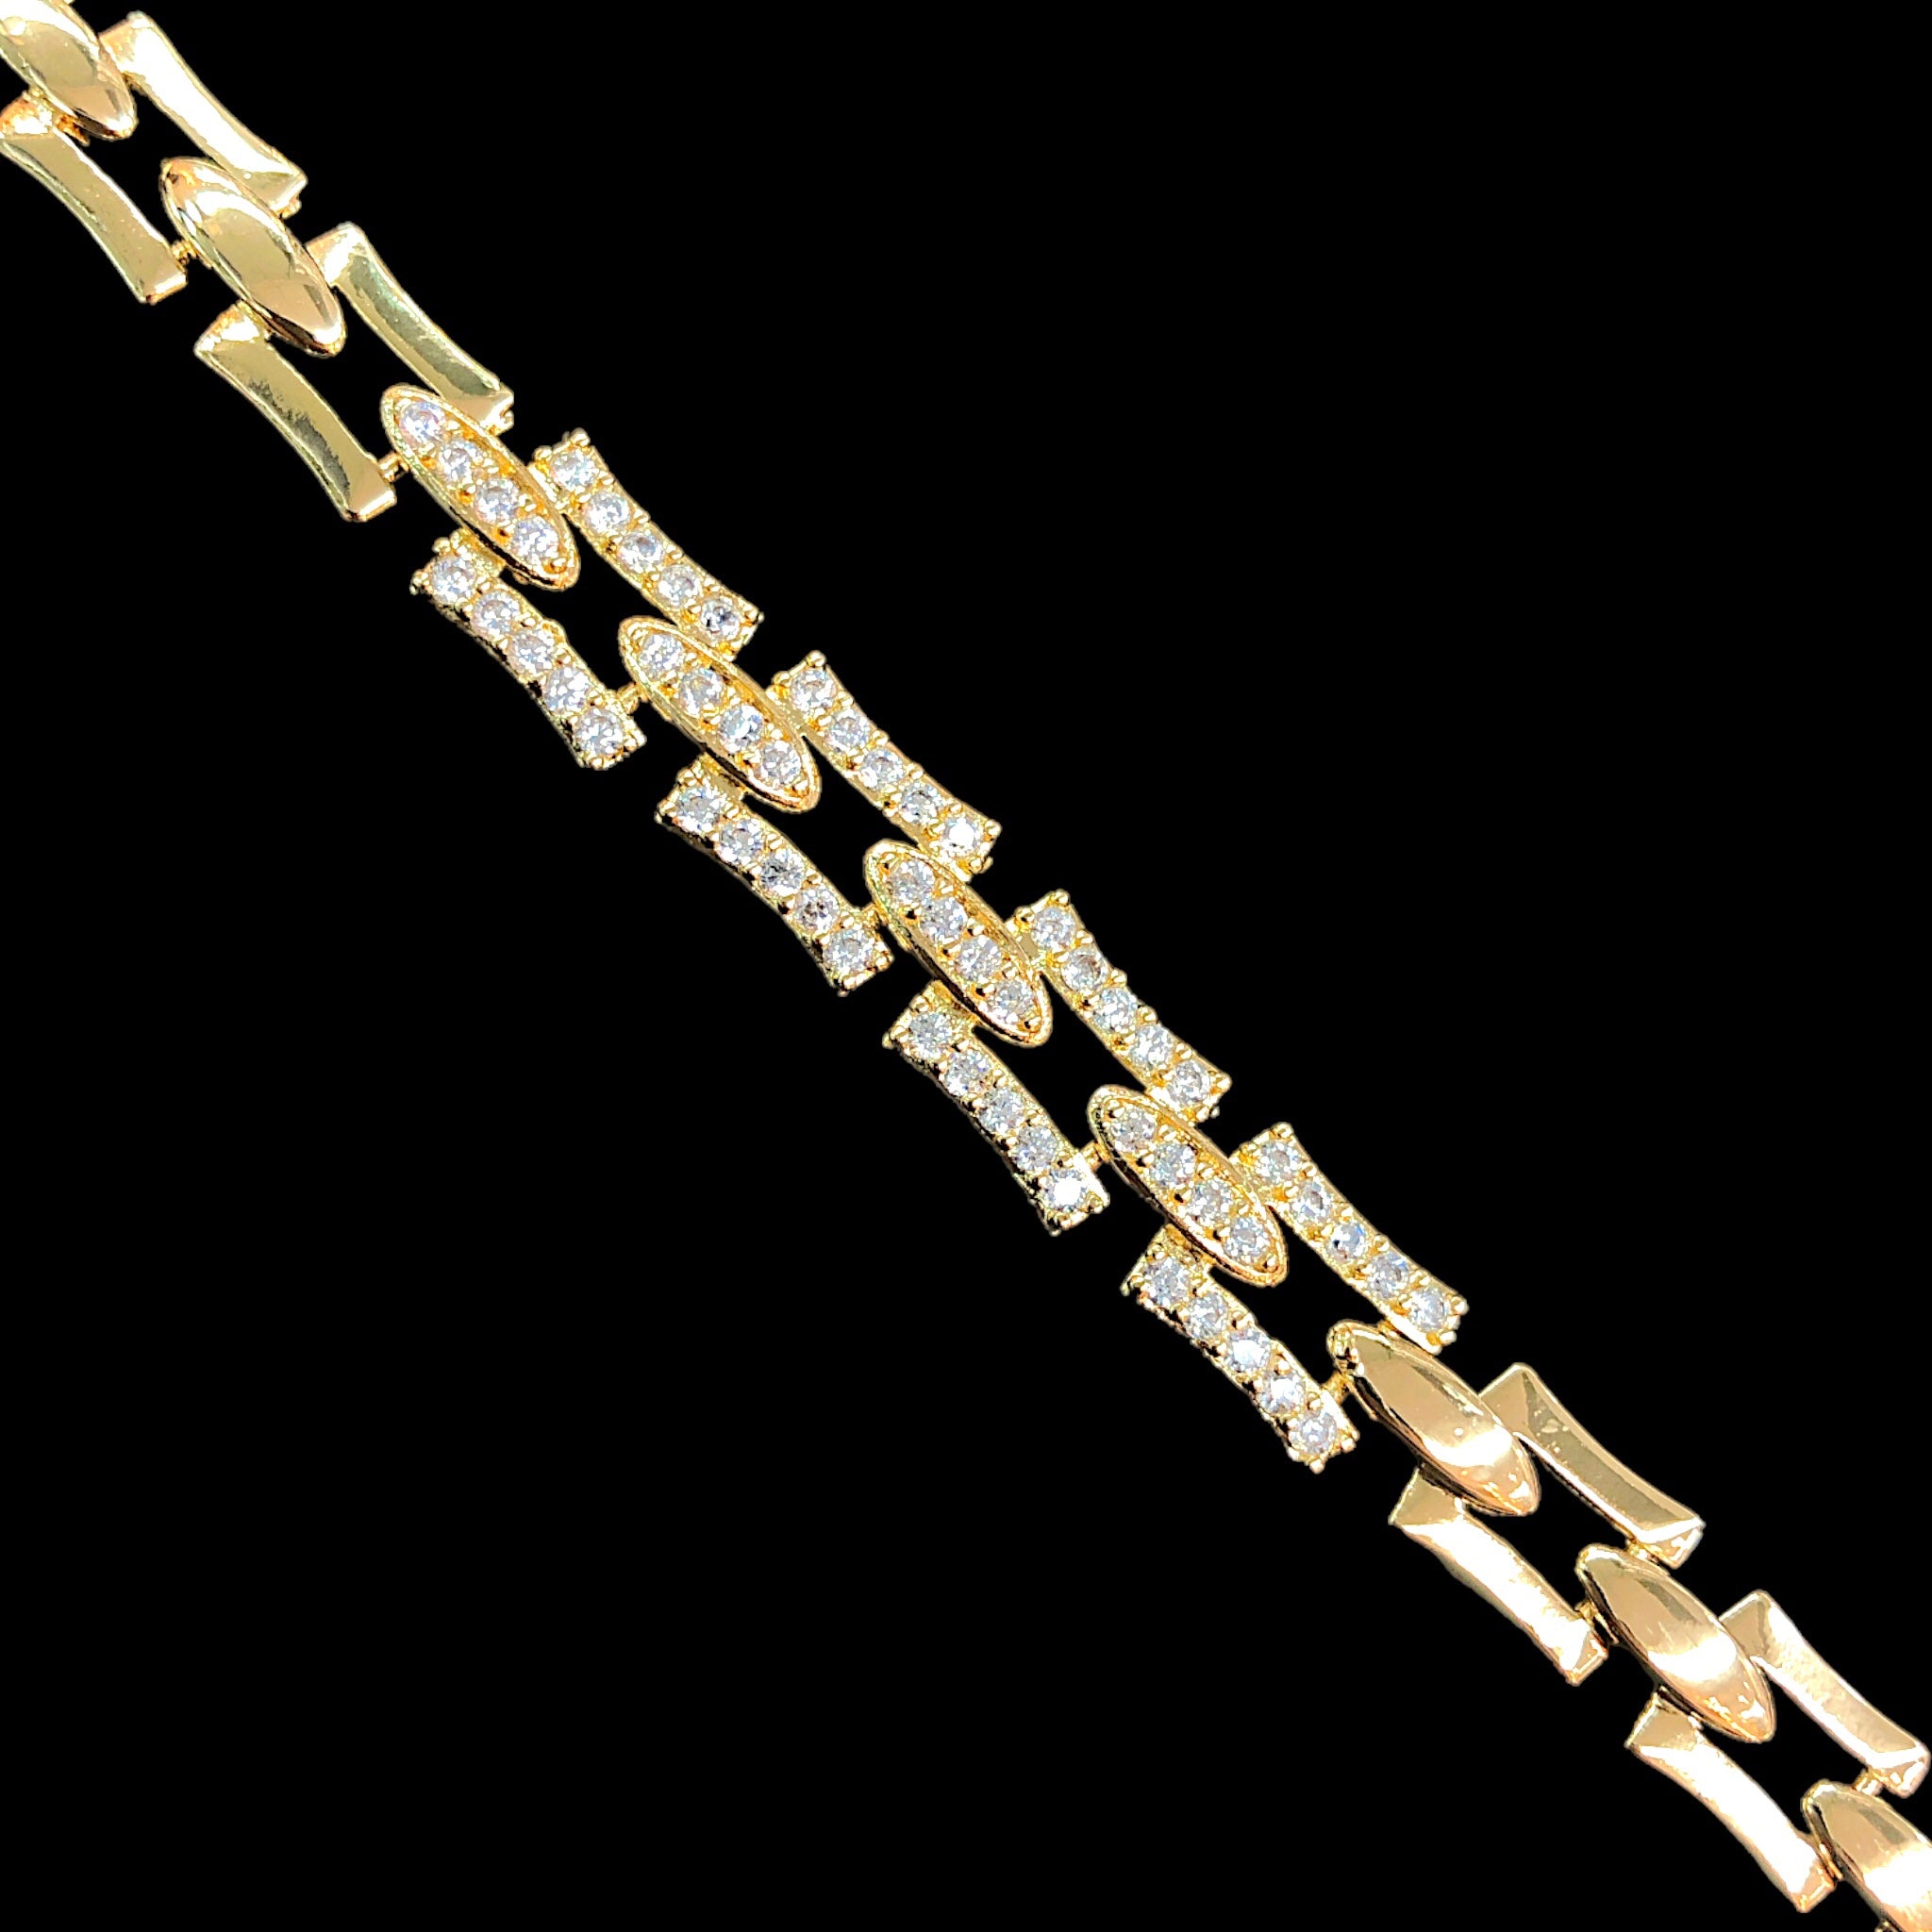 18k Gold Filled Geneva Link CZ Bracelet- kuania oro laminado